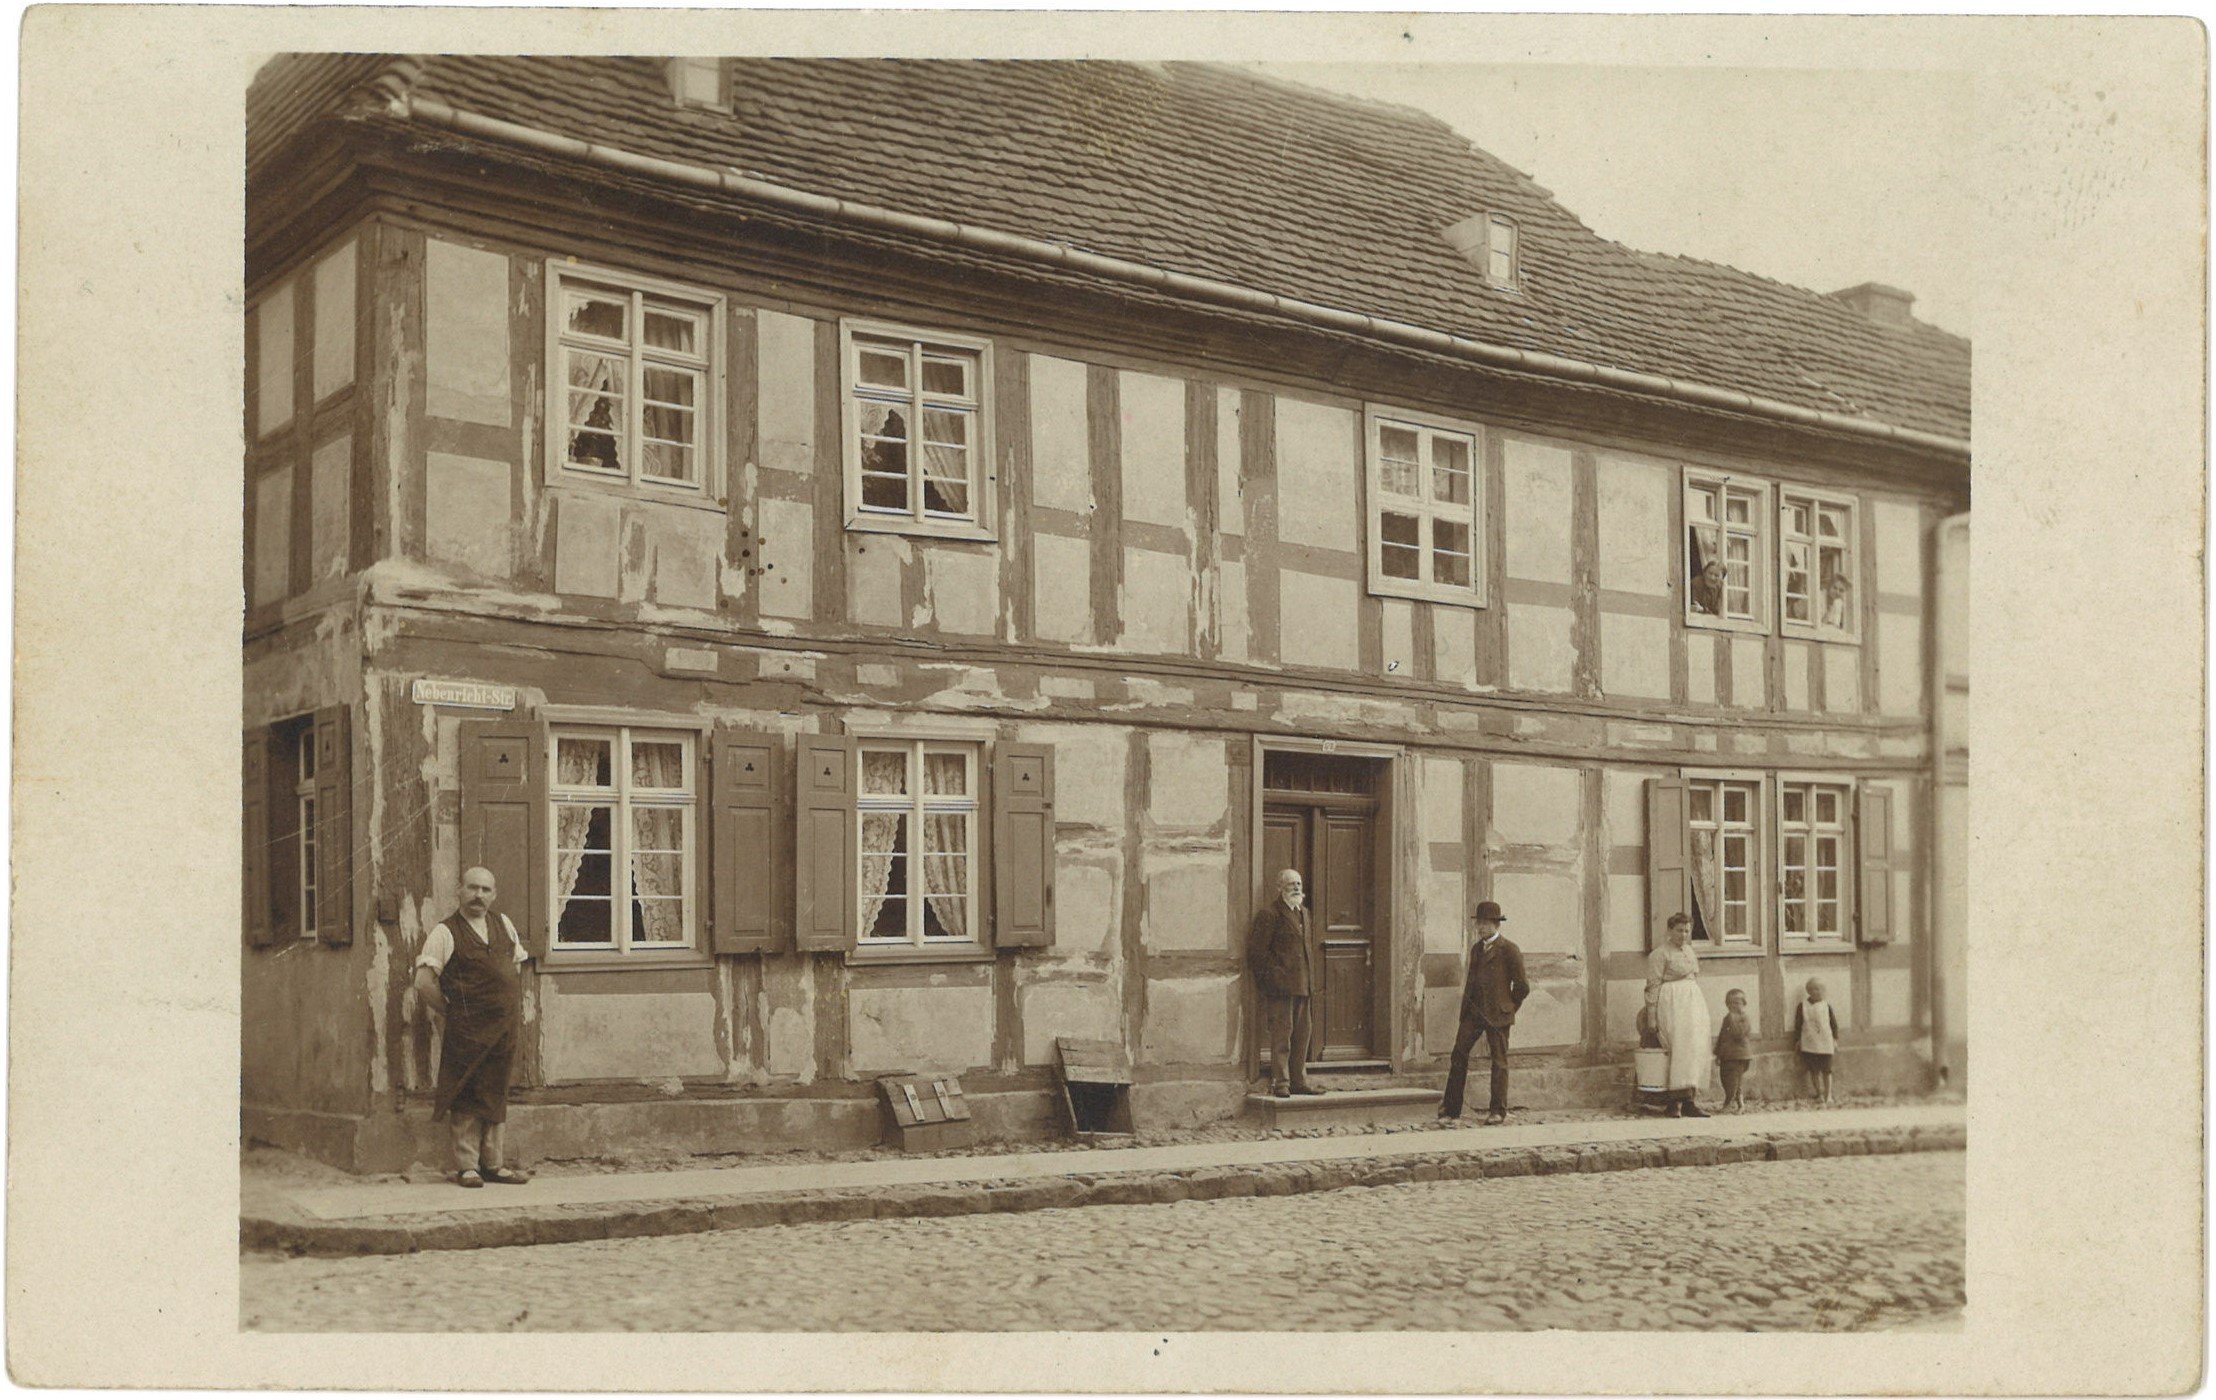 Berlinchen/Neumark / Barlinek: Nebenrichtstraße 21 (Wohnhaus) (Landesgeschichtliche Vereinigung für die Mark Brandenburg e.V., Archiv CC BY)